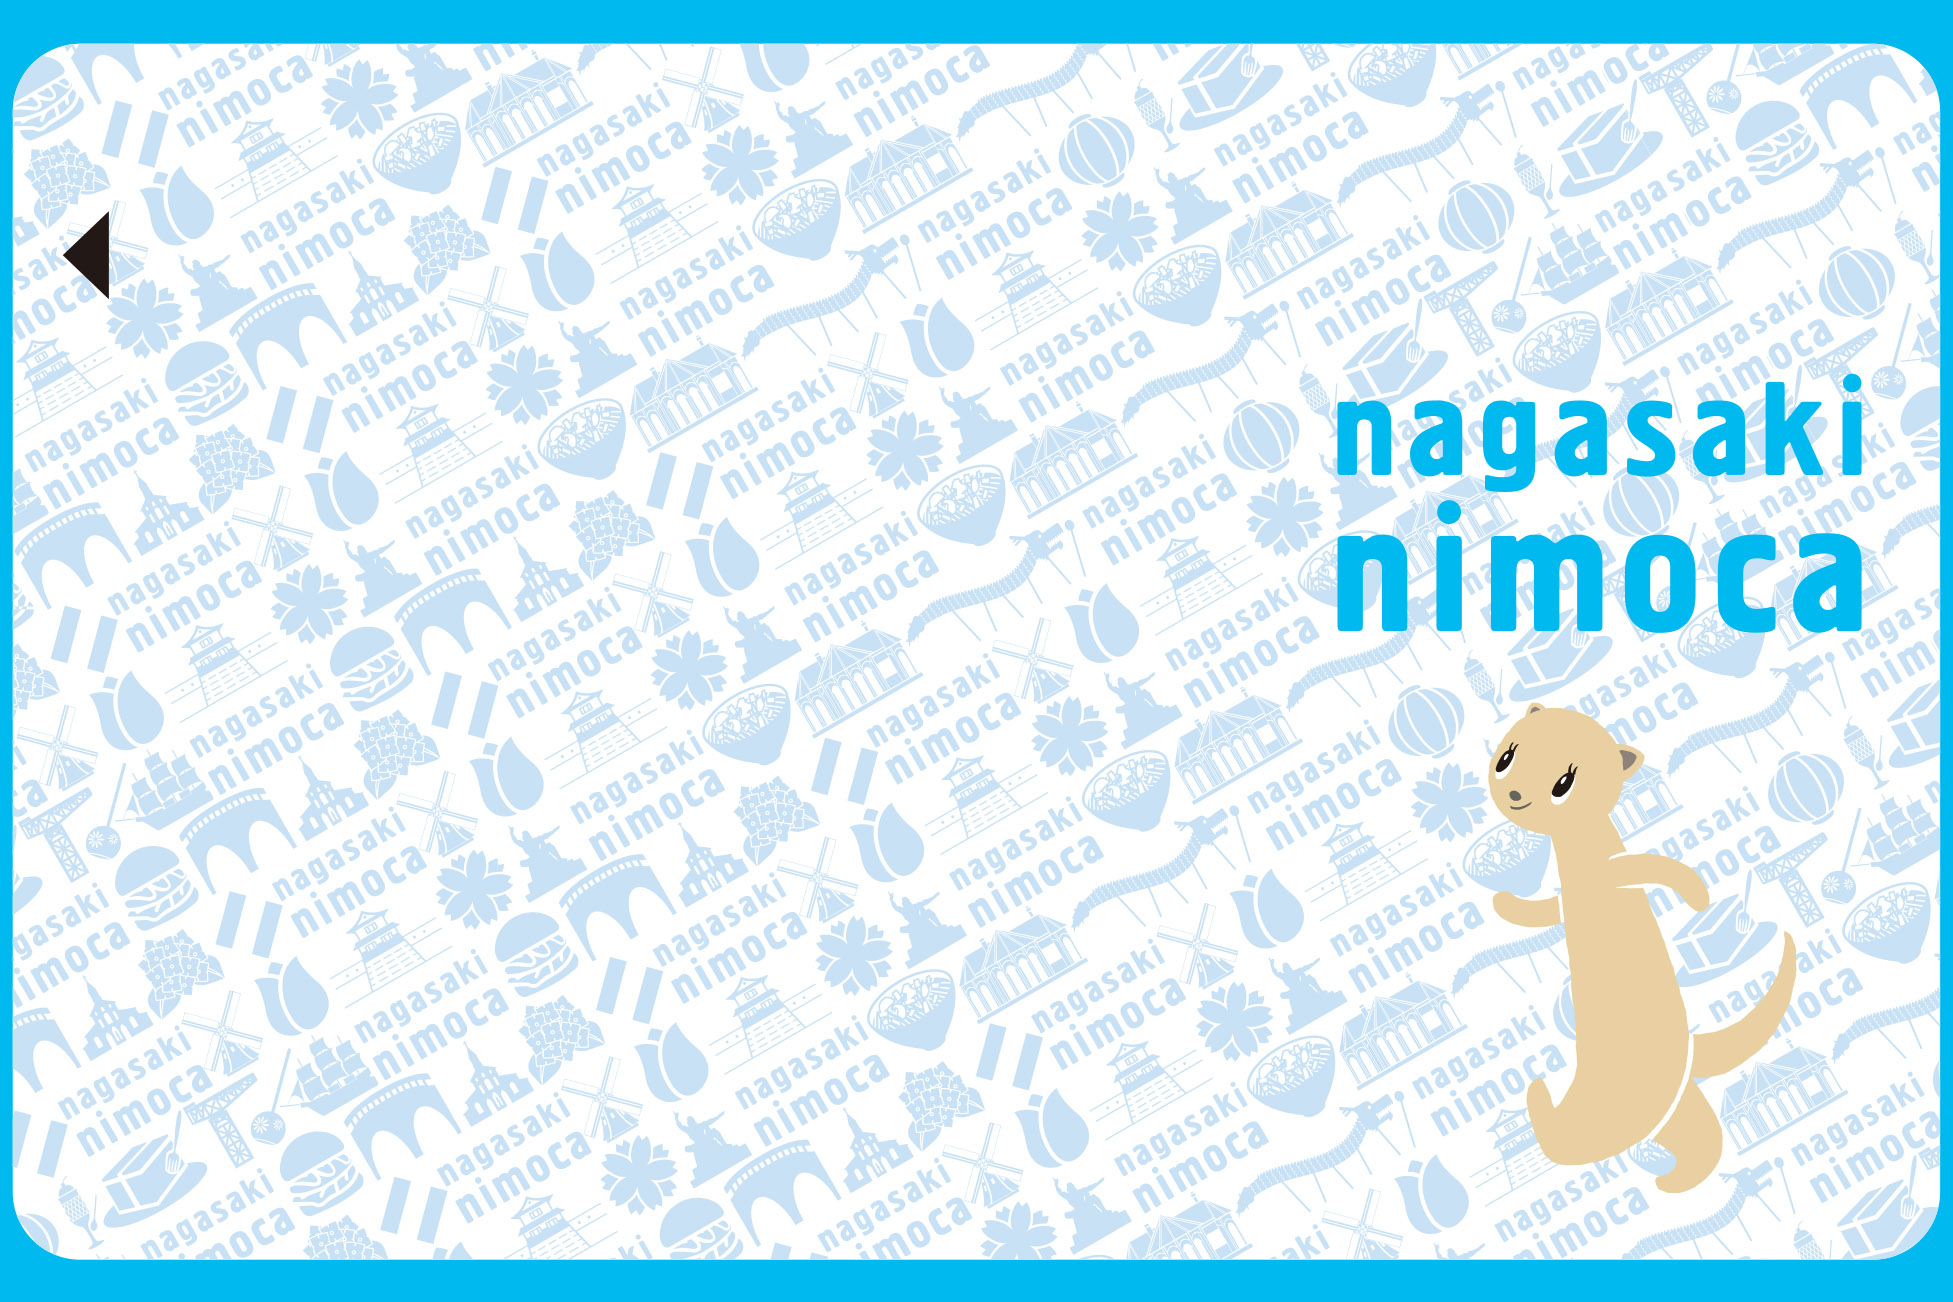 長崎県の新nimocaは愛称「nagasaki nimoca」に。デザインも決定。2020 